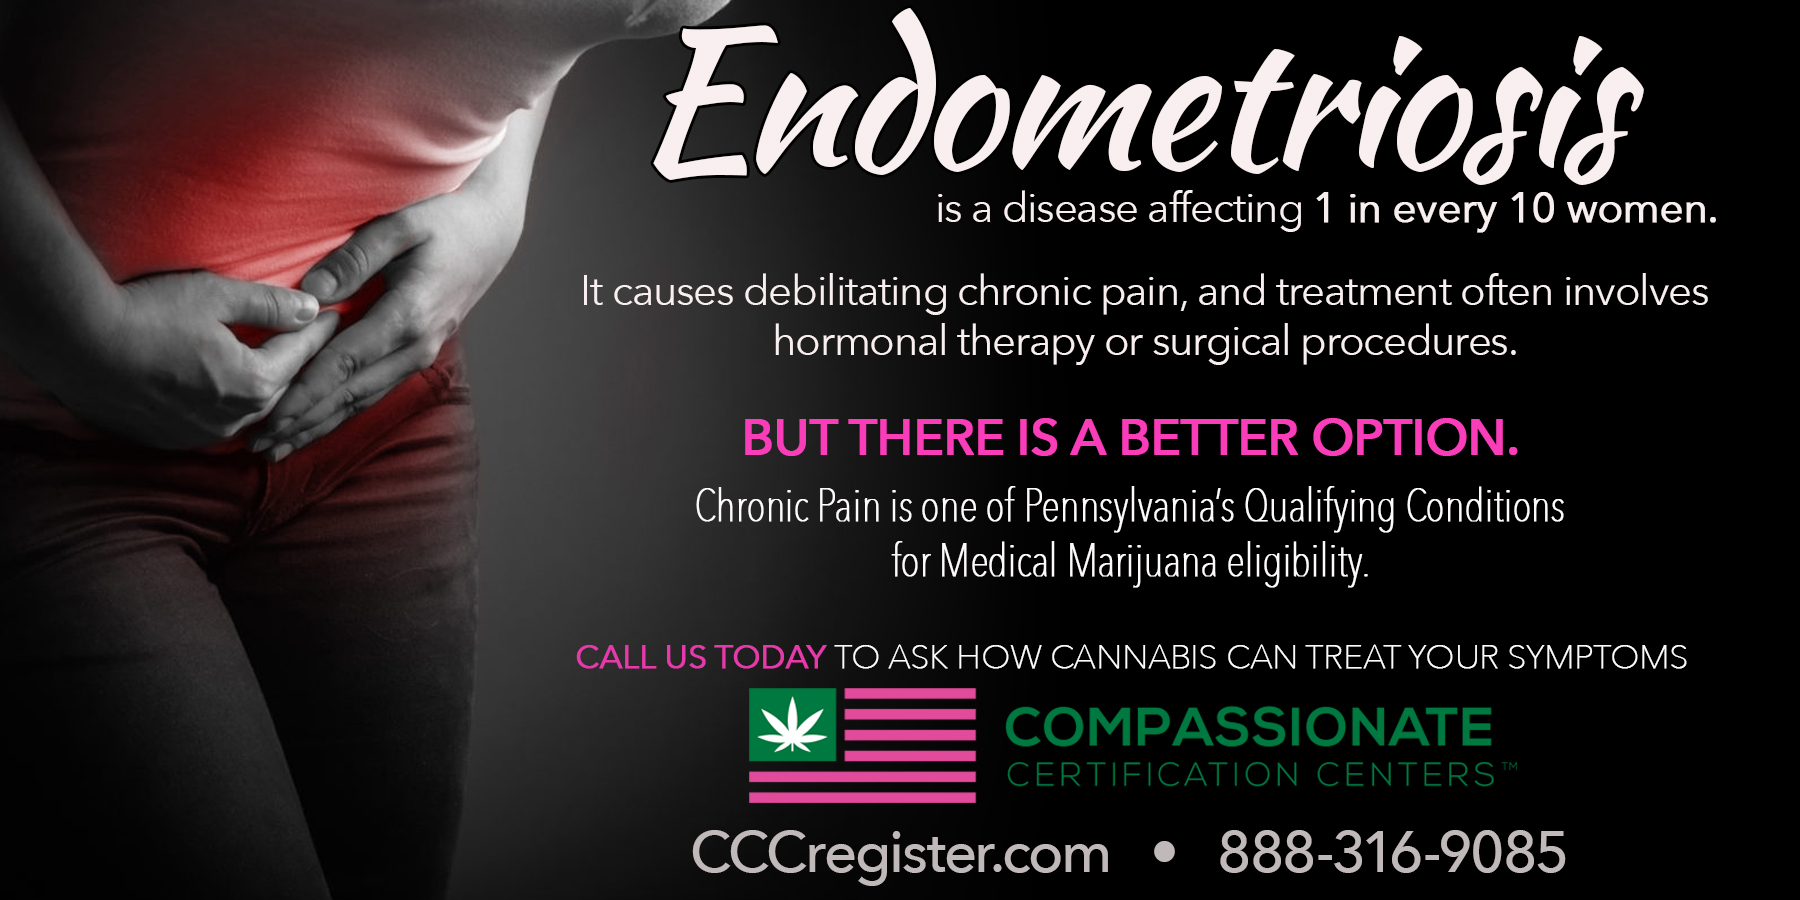 CBD Oil and Medical Marijuana for Endometriosis